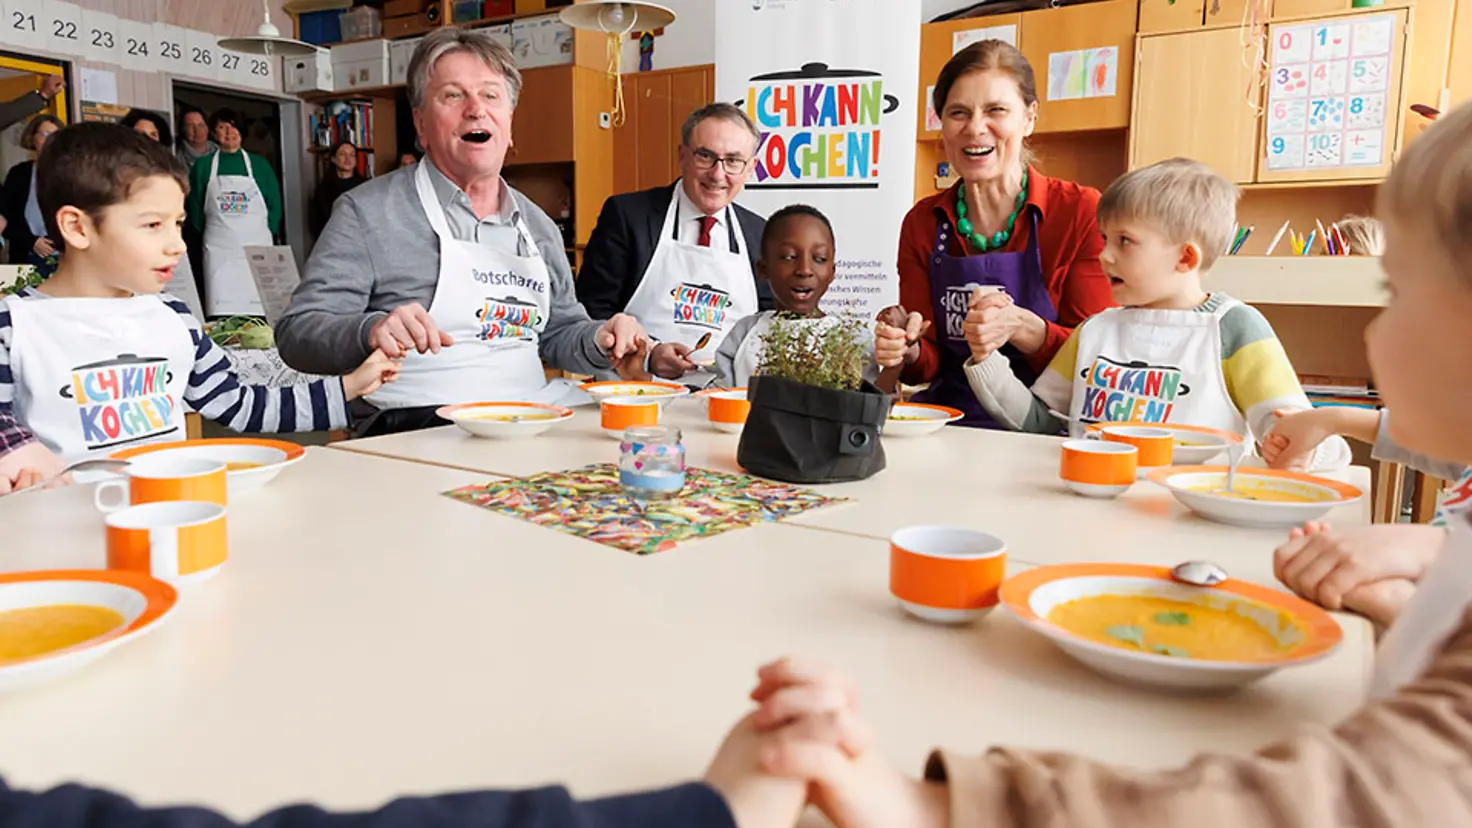 Der baden-württembergische Gesundheitsminister Manne Lucha, der Barmer-Vorstandsvorsitzende Professor Dr. Christoph Straub und die Köchin Sarah Wiener sitzen mit Kindern an einem Tisch und halten sich an den Händen.